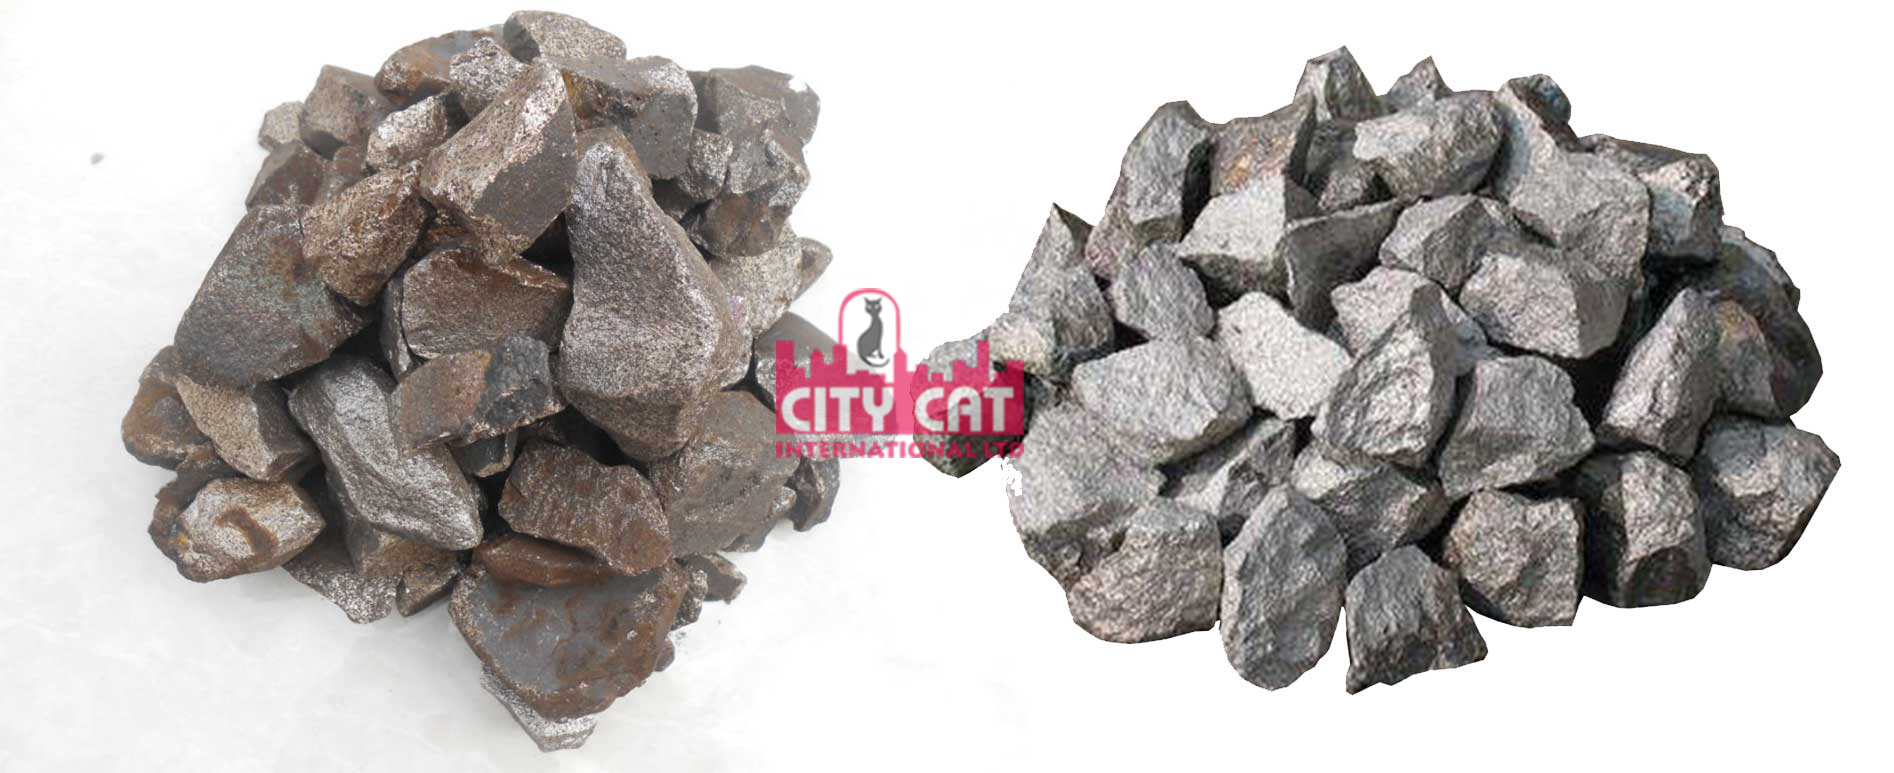 citycatrefractories - ferro-manganese